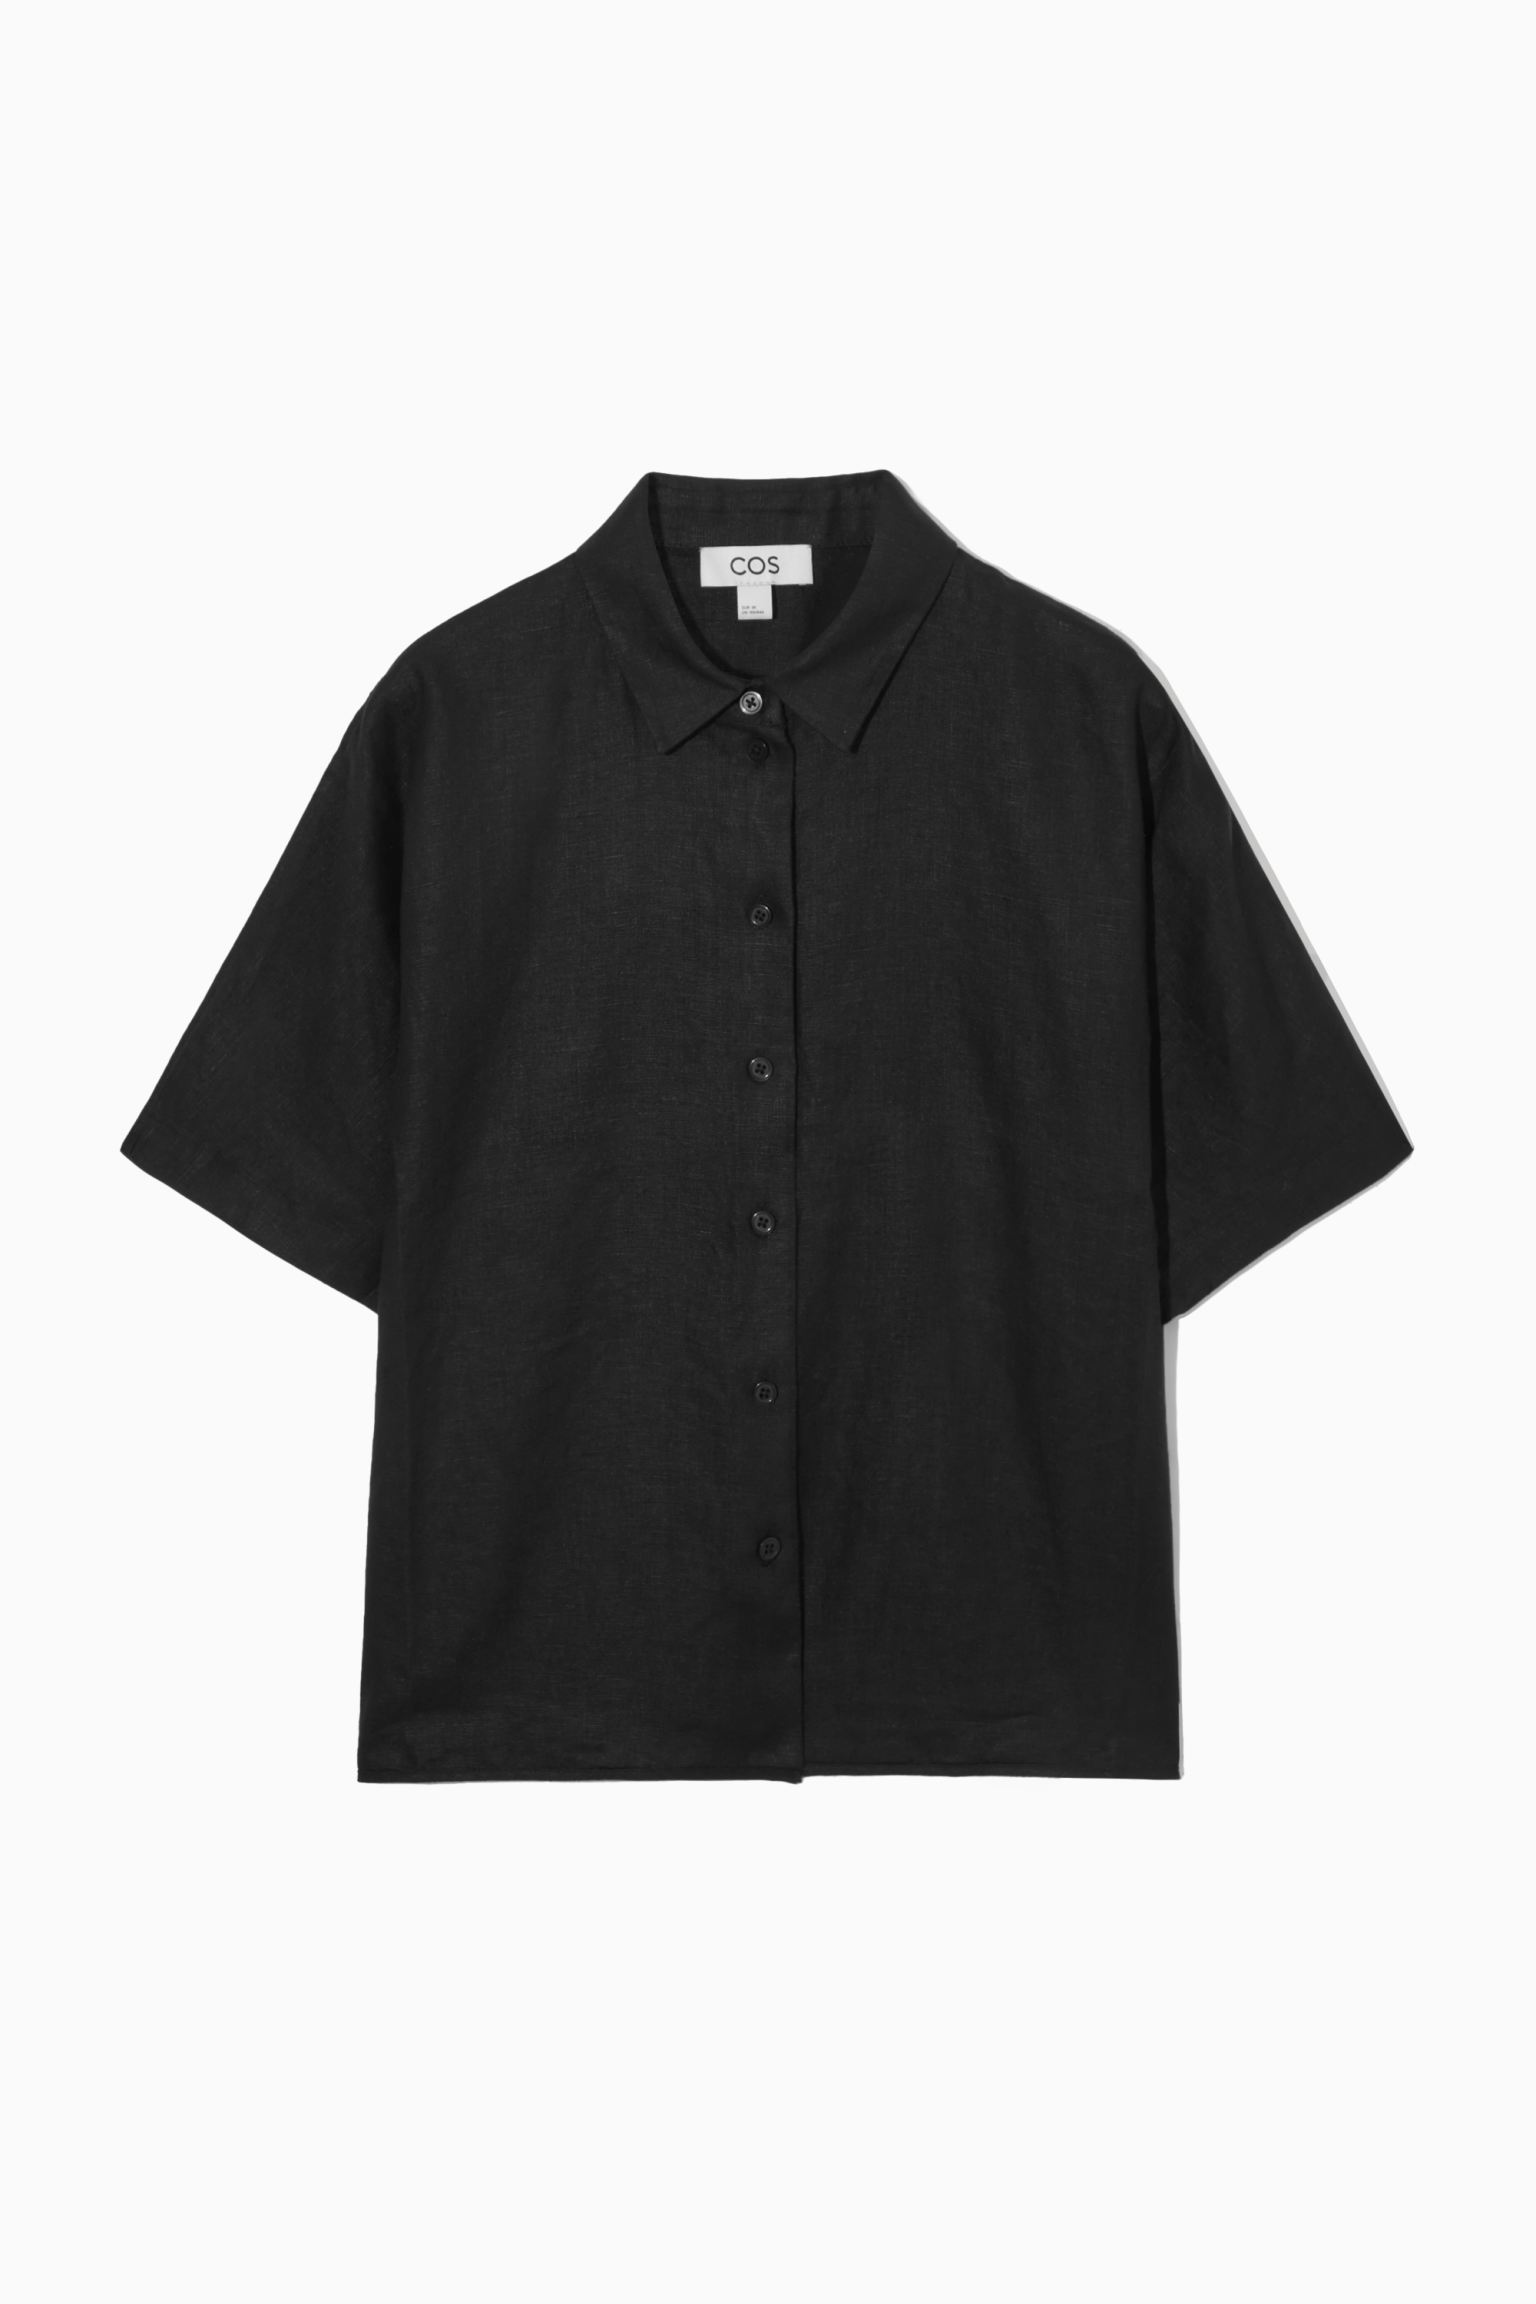 Рубашка женская COS 1163843001 черная 38 EU (доставка из-за рубежа)